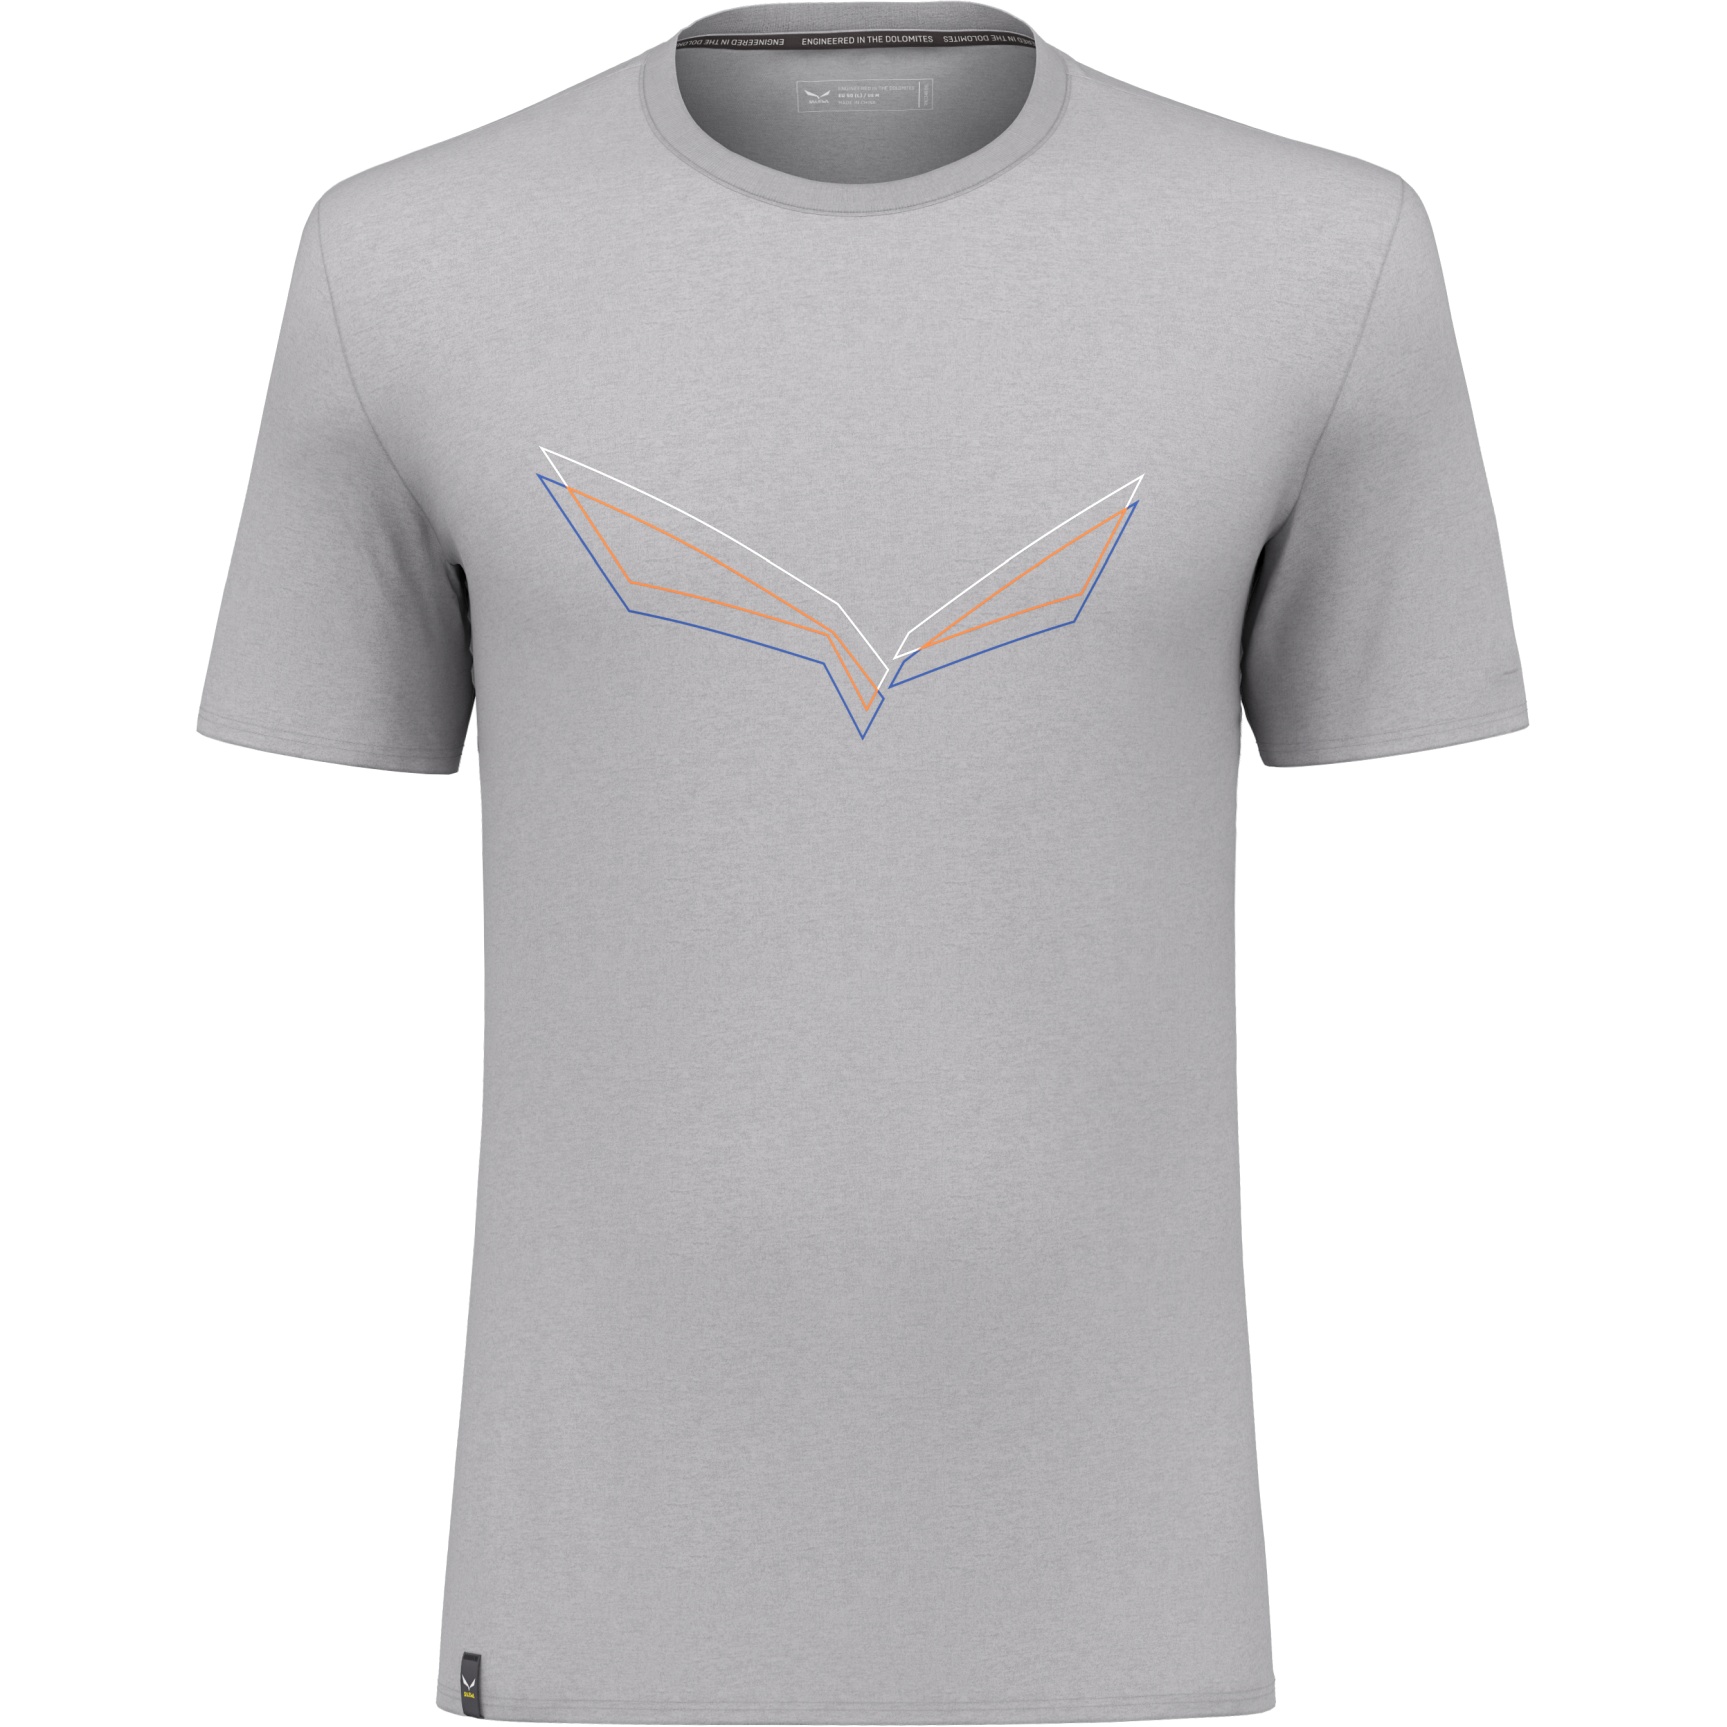 Produktbild von Salewa Pure Eagle Frame Dry T-Shirt - heather grey melange 624